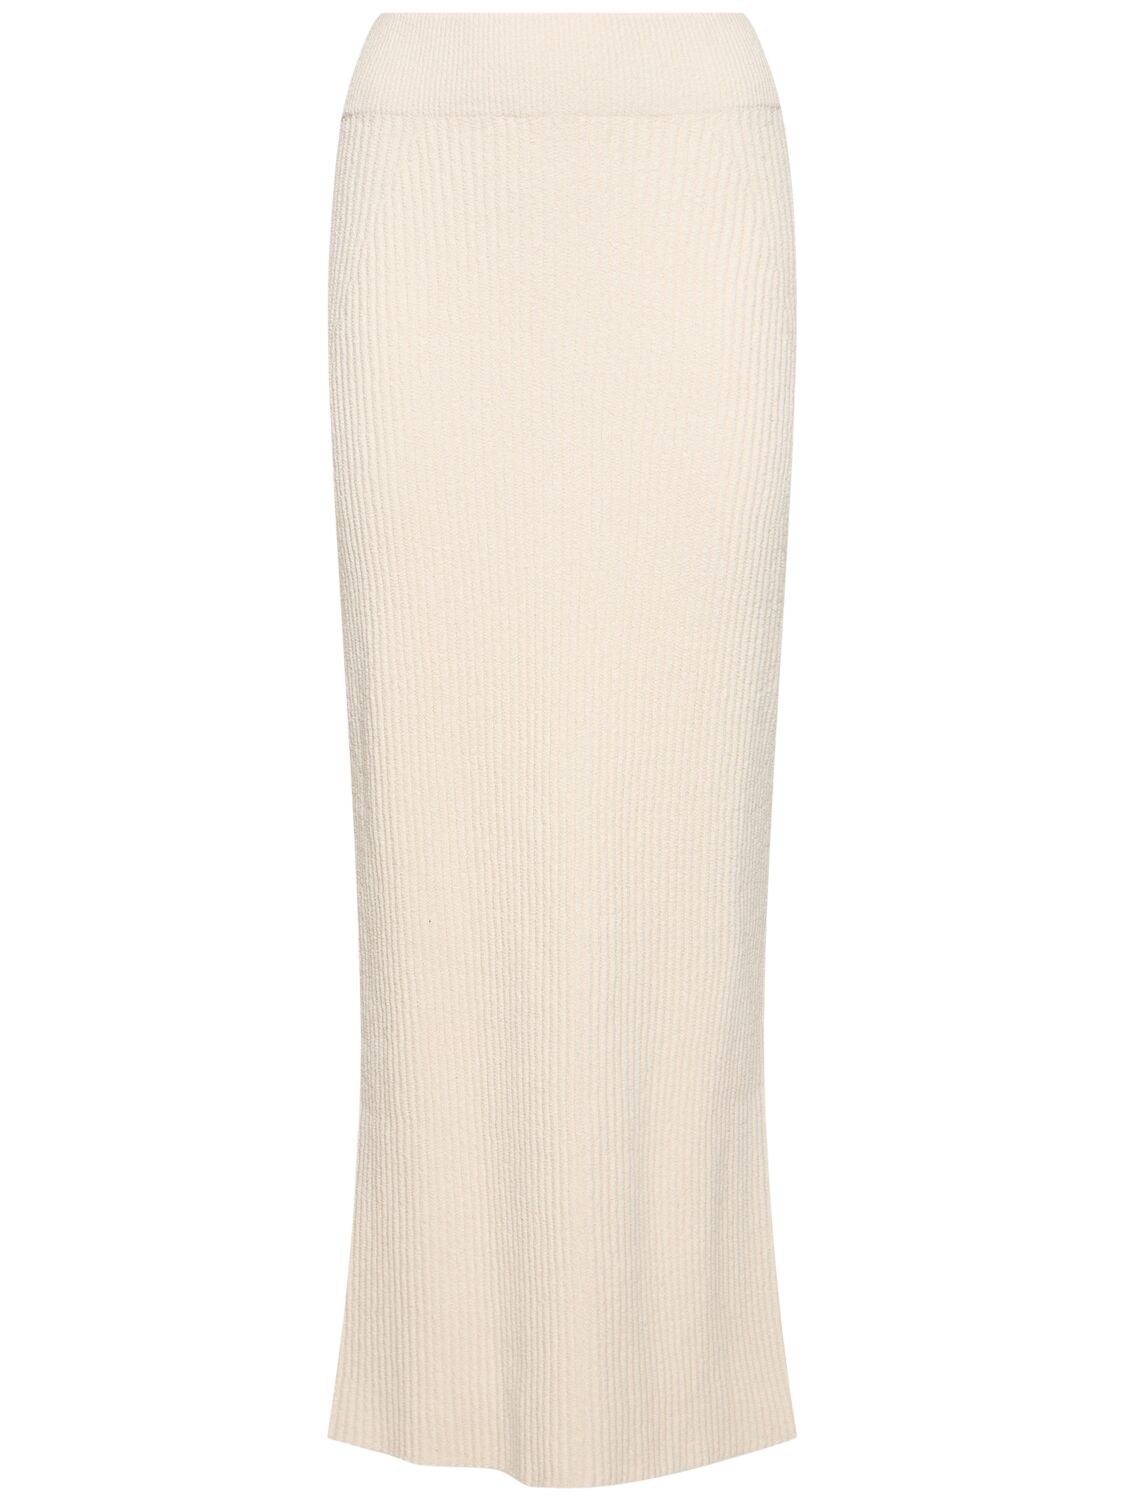 Image of Bouclé Knit Cotton Blend Long Skirt